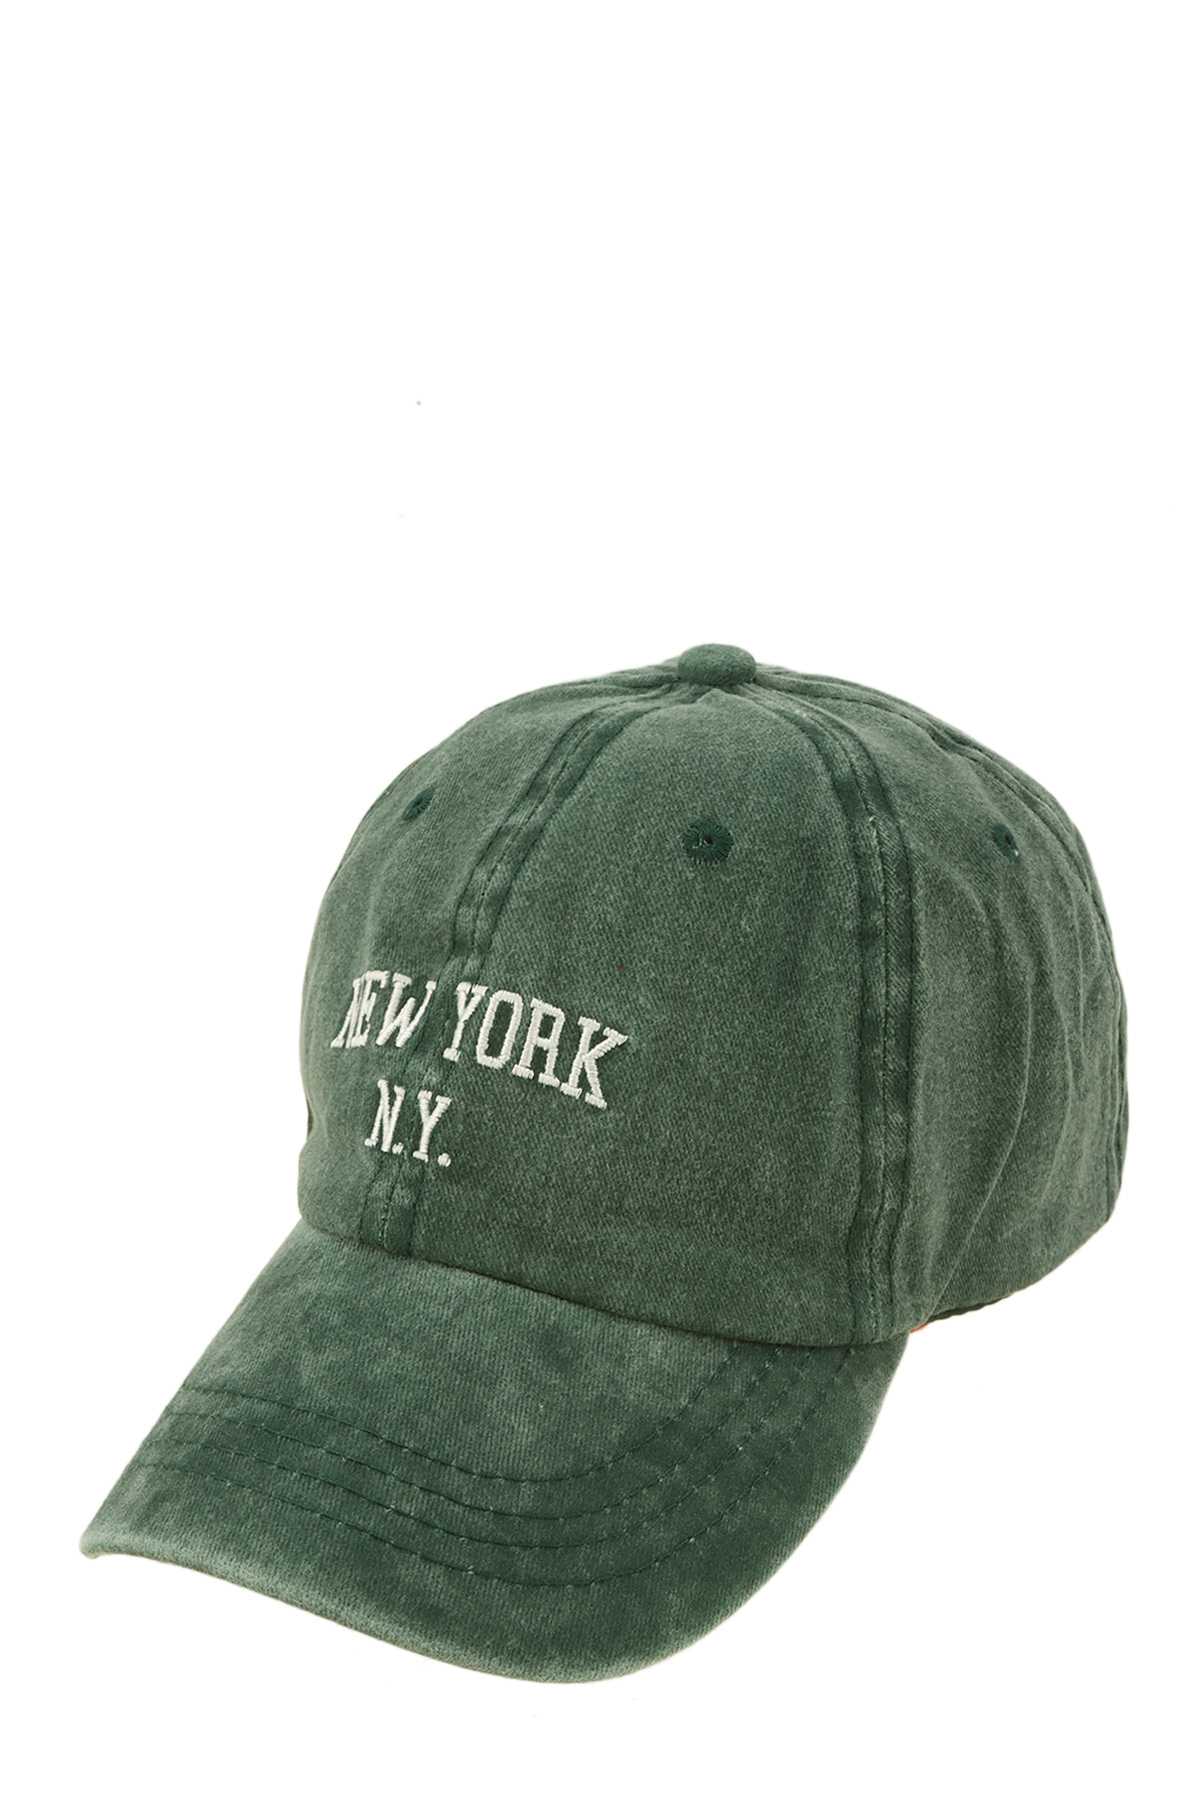 NEEW YORK Embroidery Pigment Cap